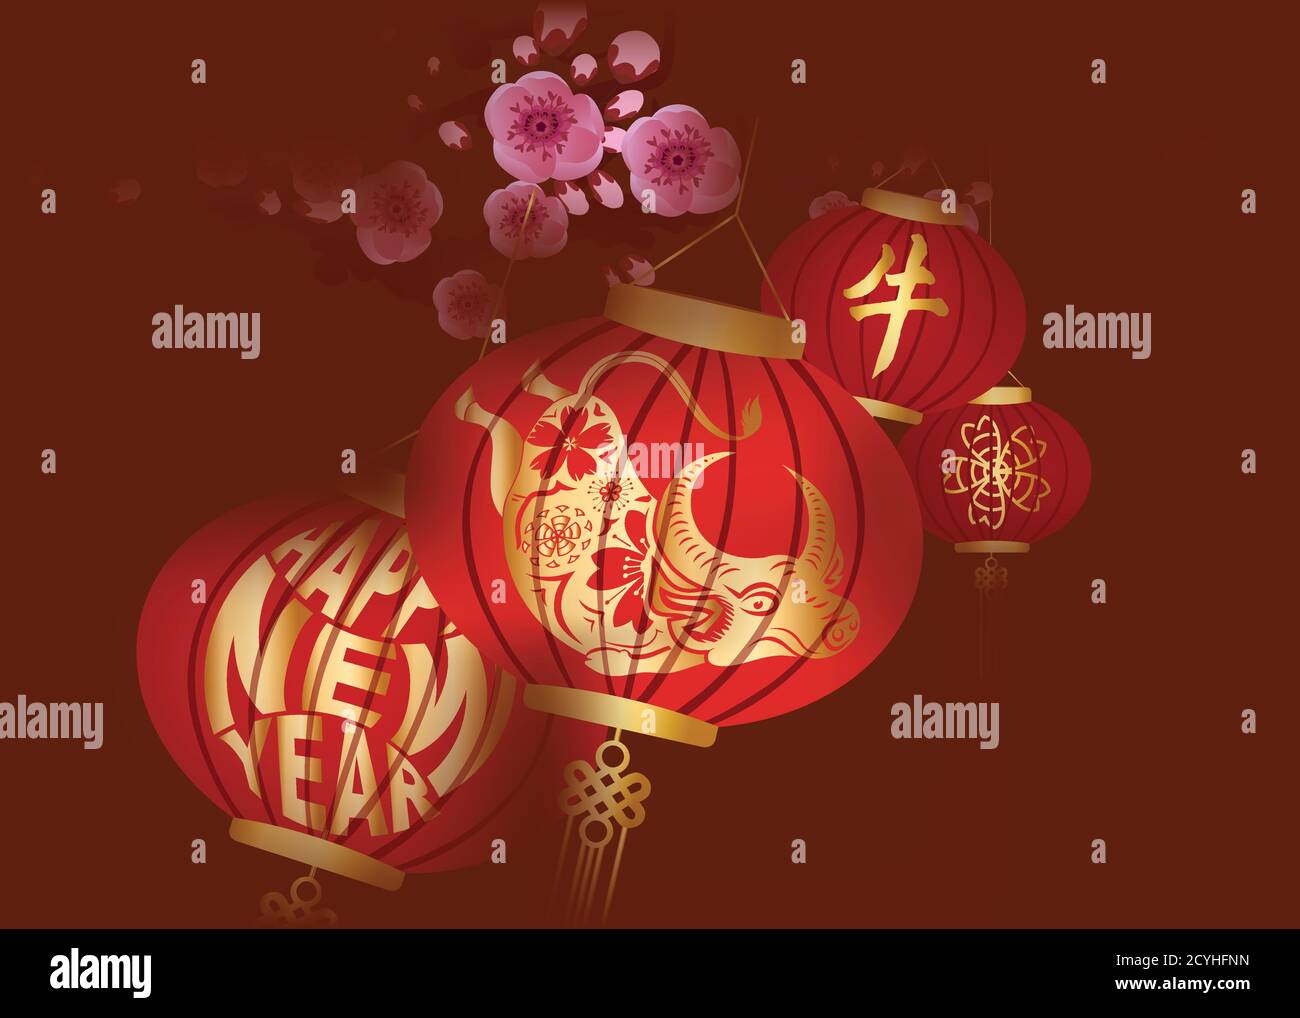 Lanterne chinoise jaune traditionnelle décorée pour le nouvel an chinois 2021 (année de traduction chinoise de ox) Illustration de Vecteur